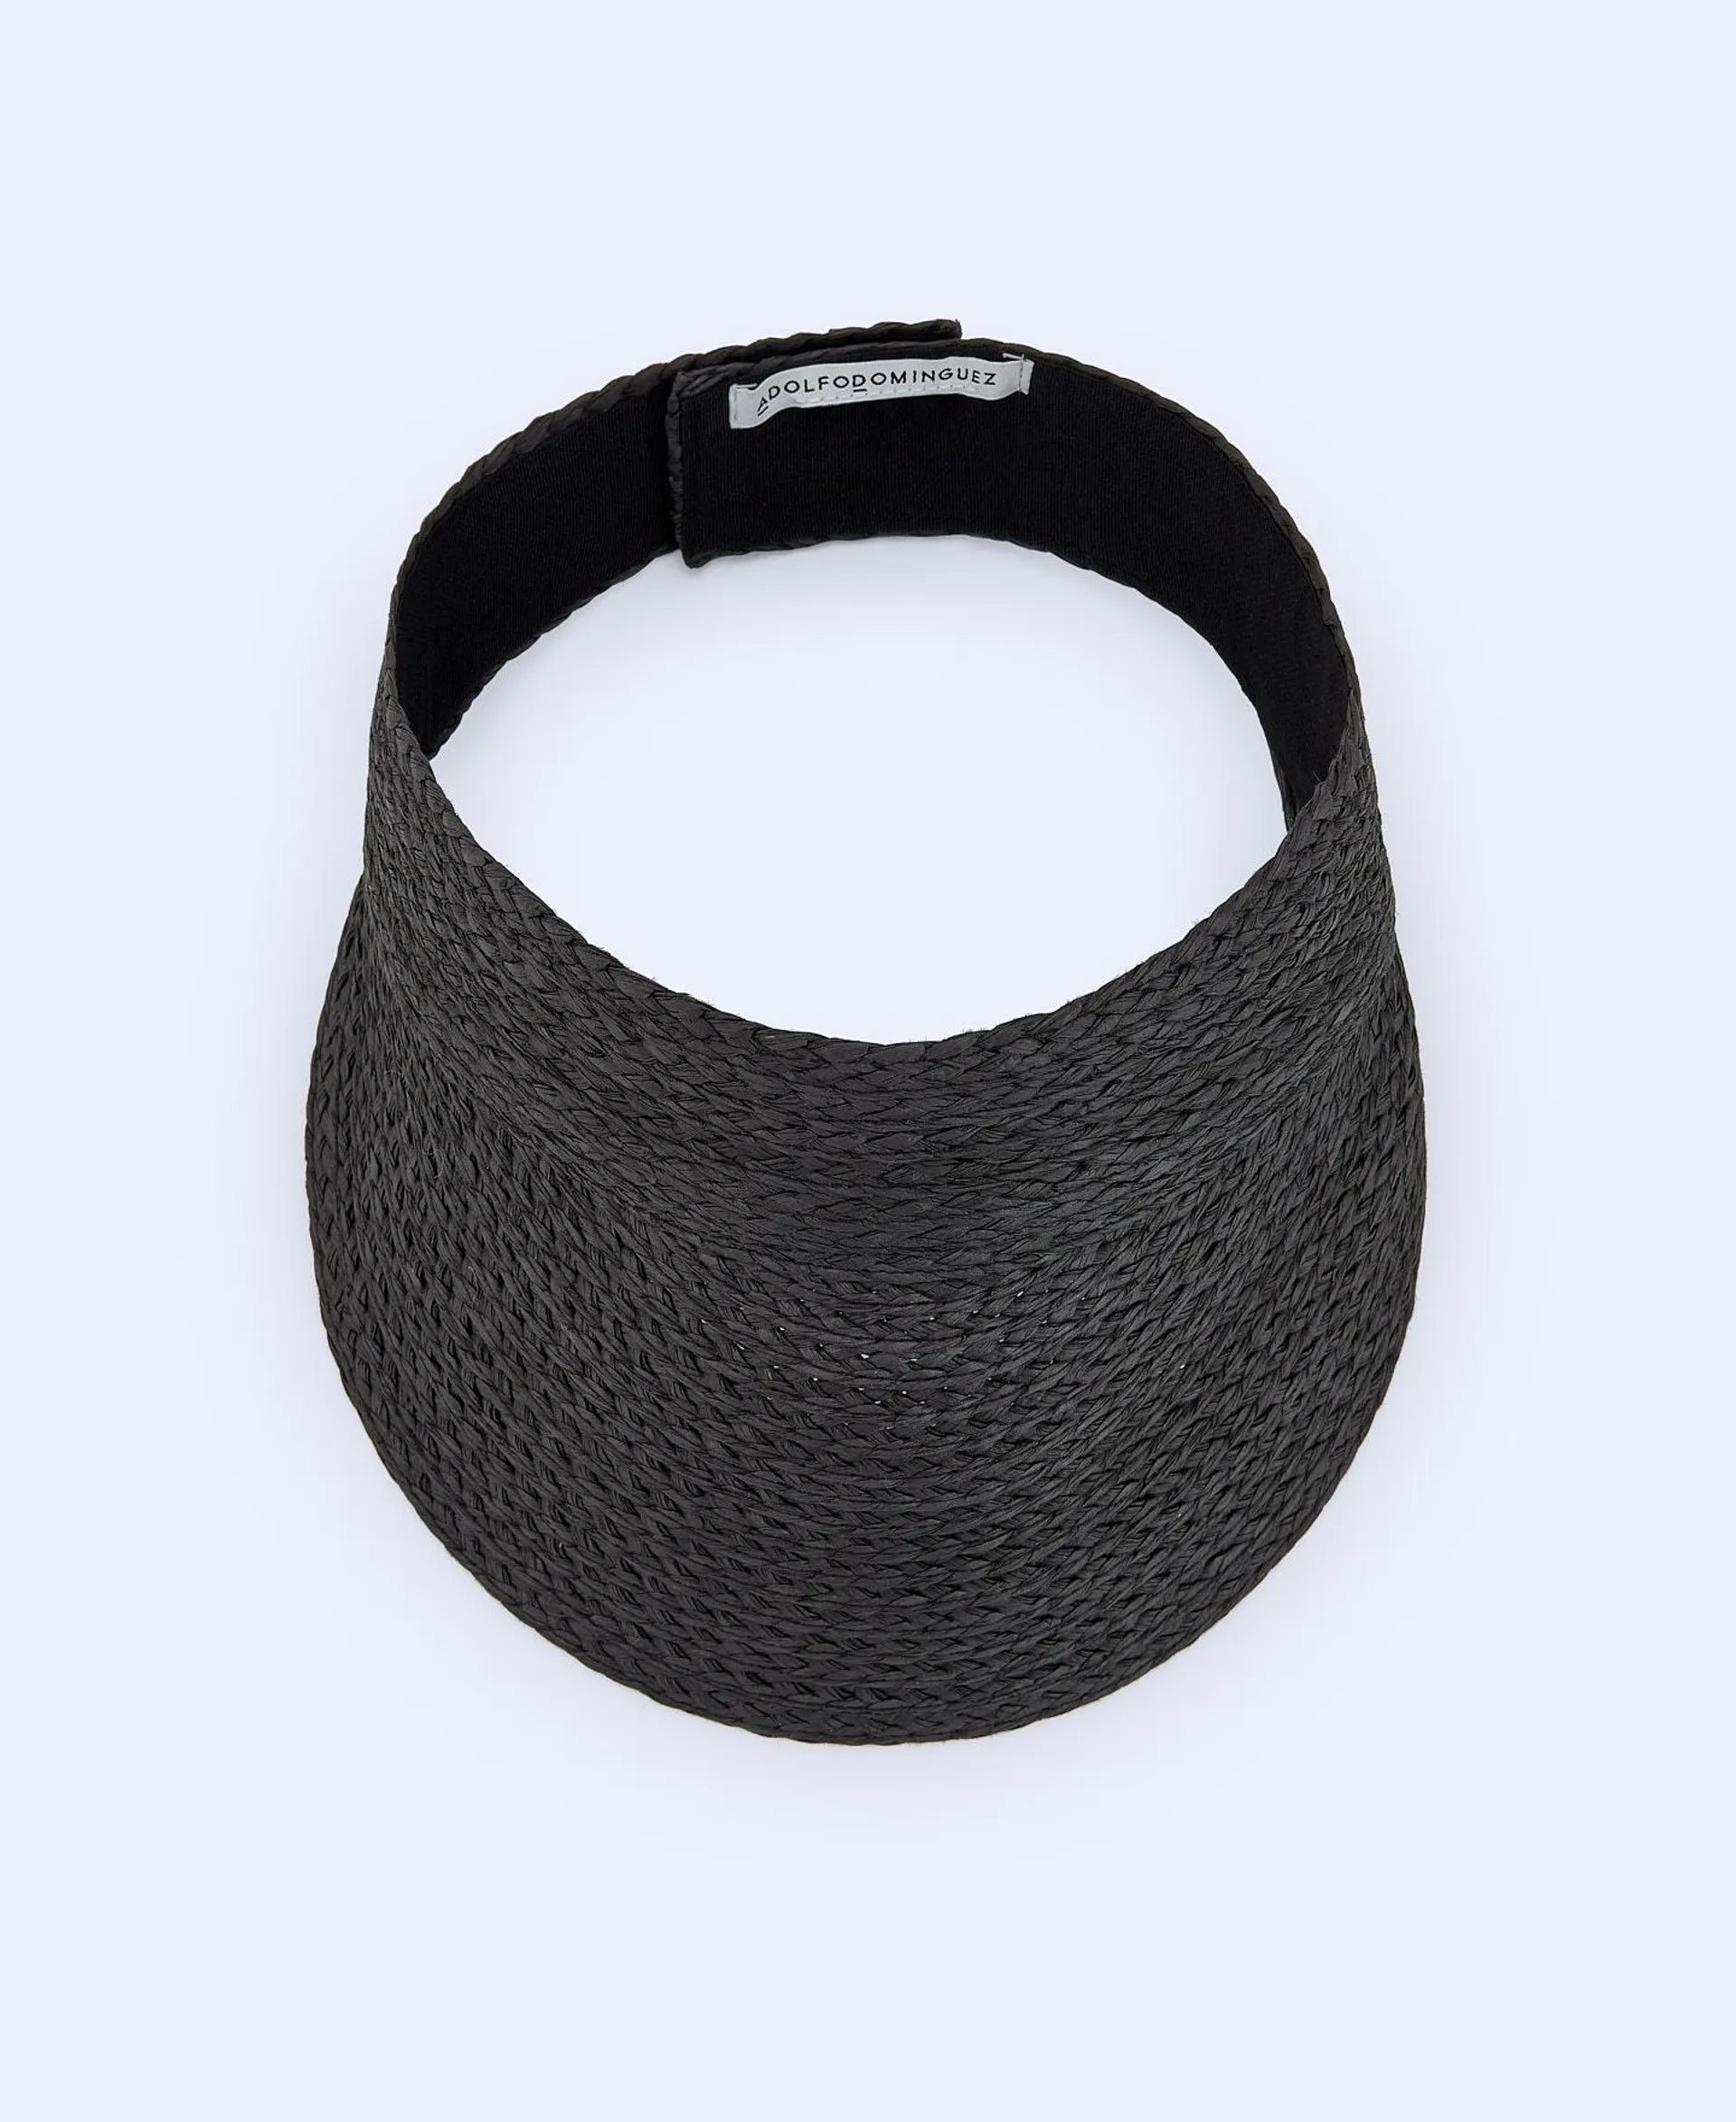 Braided paper visor